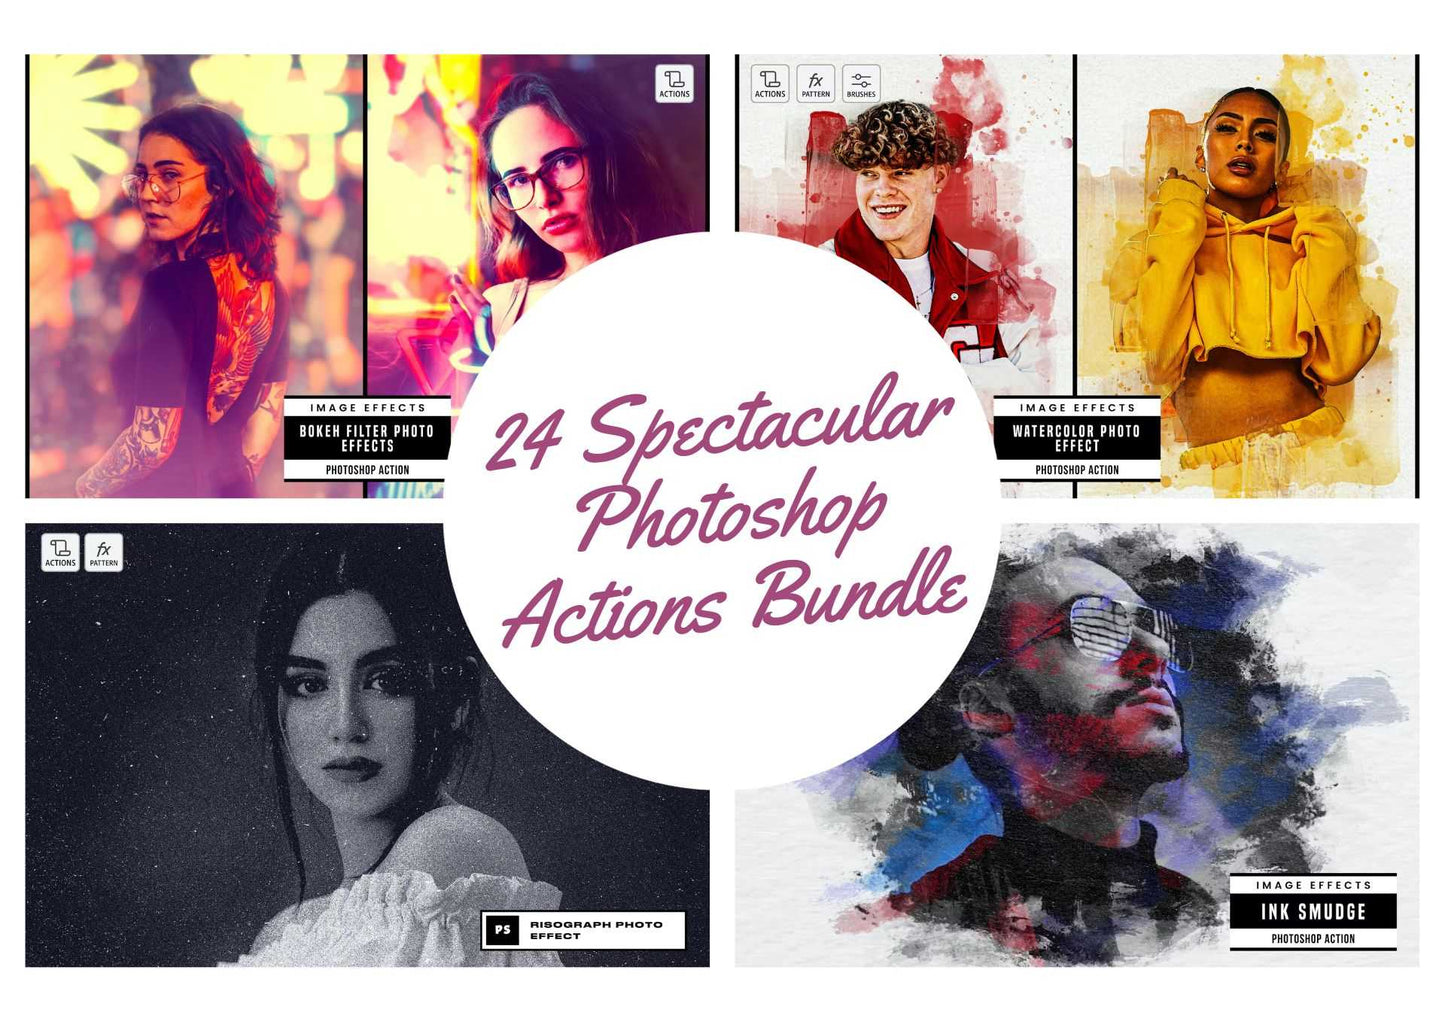 24 Spectacular Photoshop Actions Bundle - Photoboto